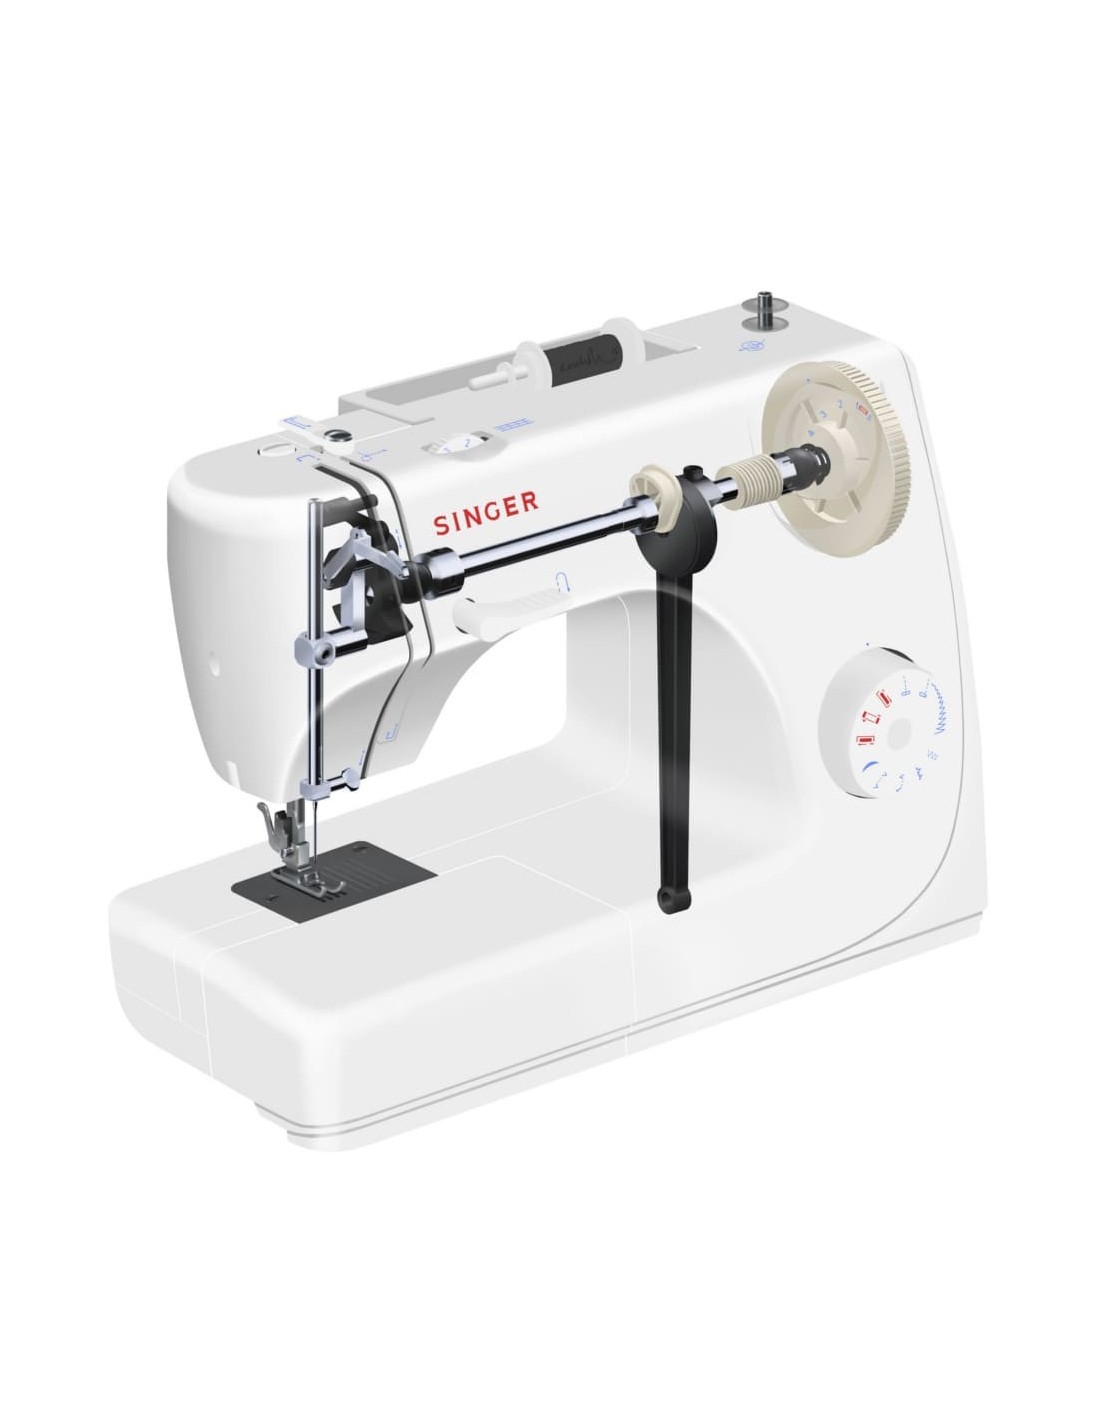 Oferta de  en la máquina de coser Singer 8280: ahora puede ser  nuestra por 66,36 euros